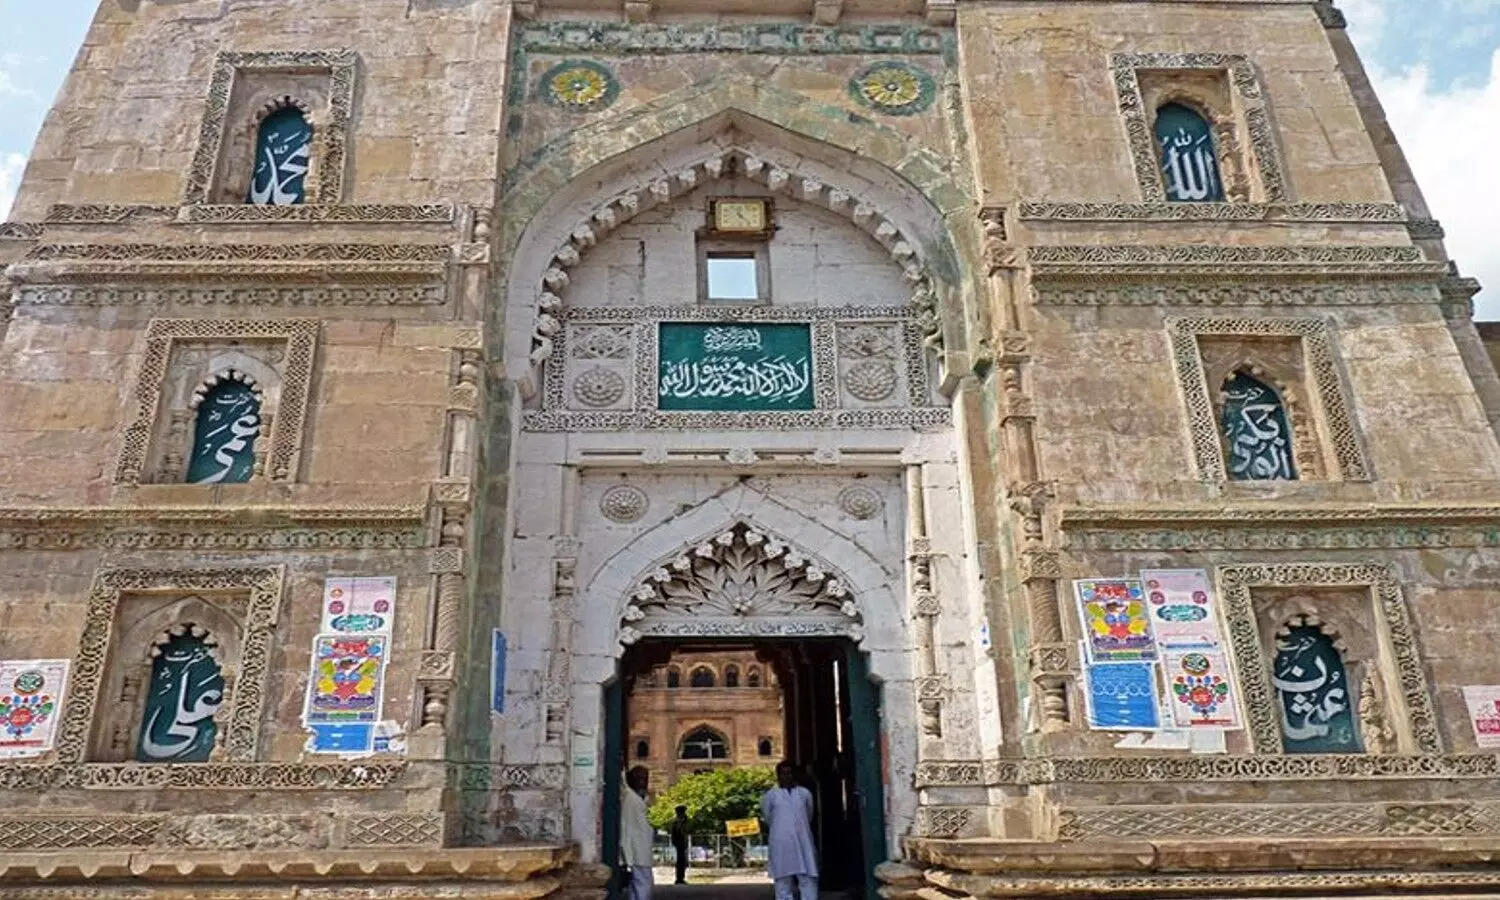 Atala Badi Masjid